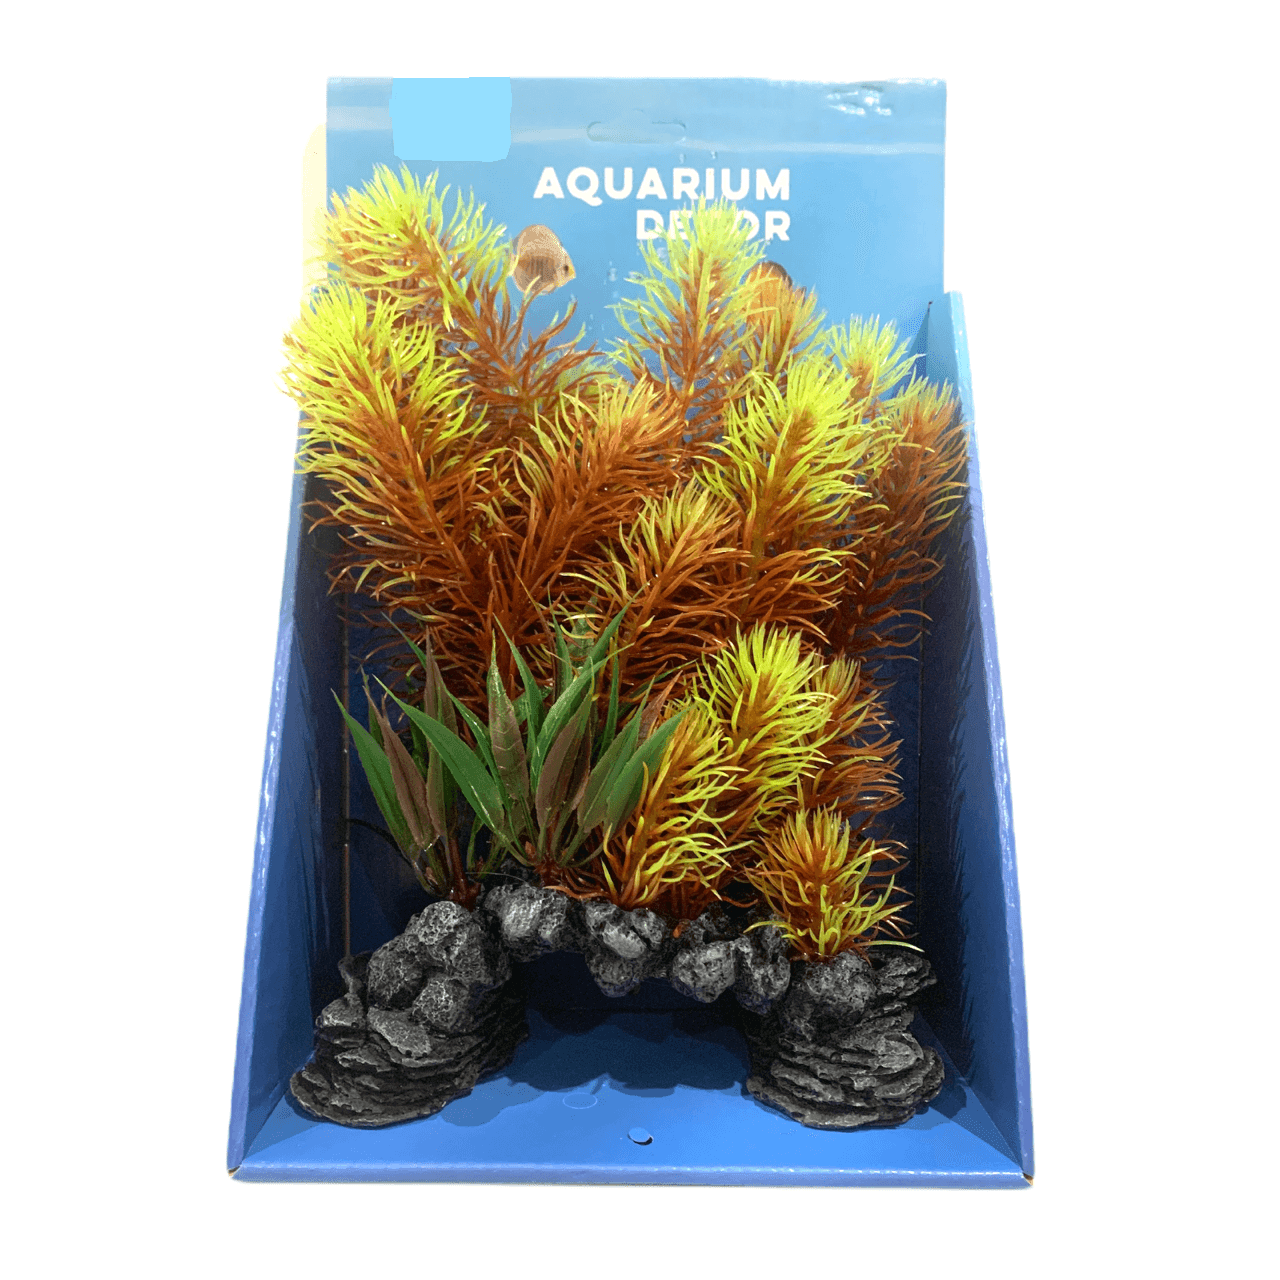 Aquarium Rock Cave Ornament with Plant 26cm (#13) - Amazing Amazon